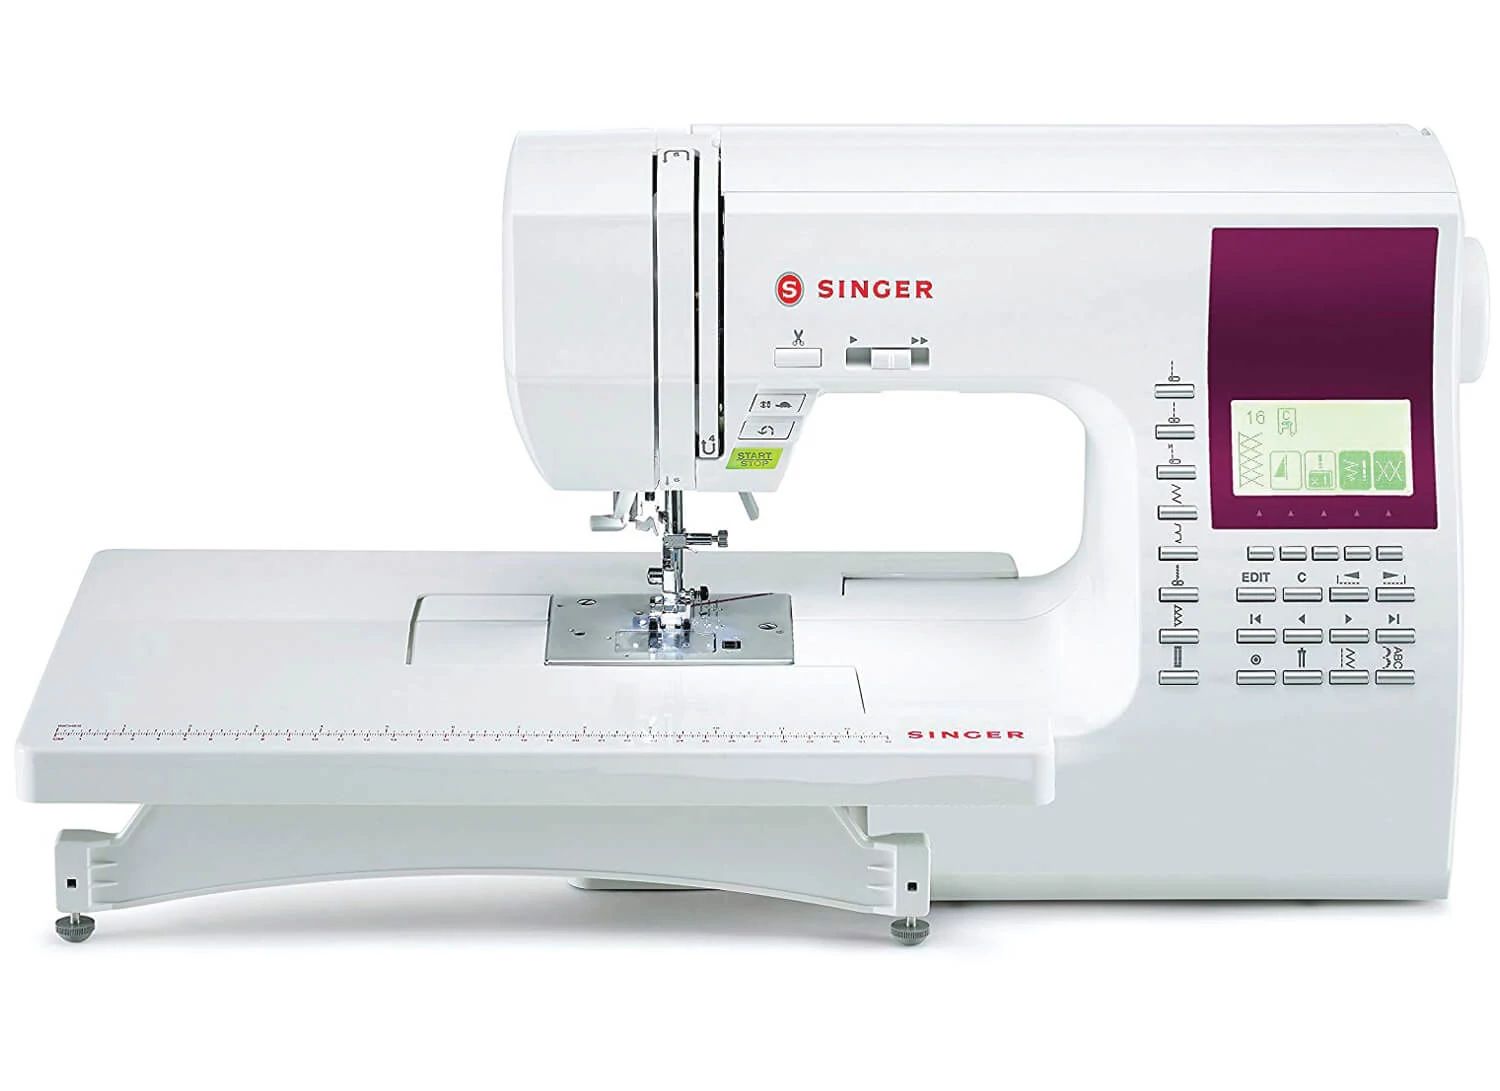 8060 singer sewing machine